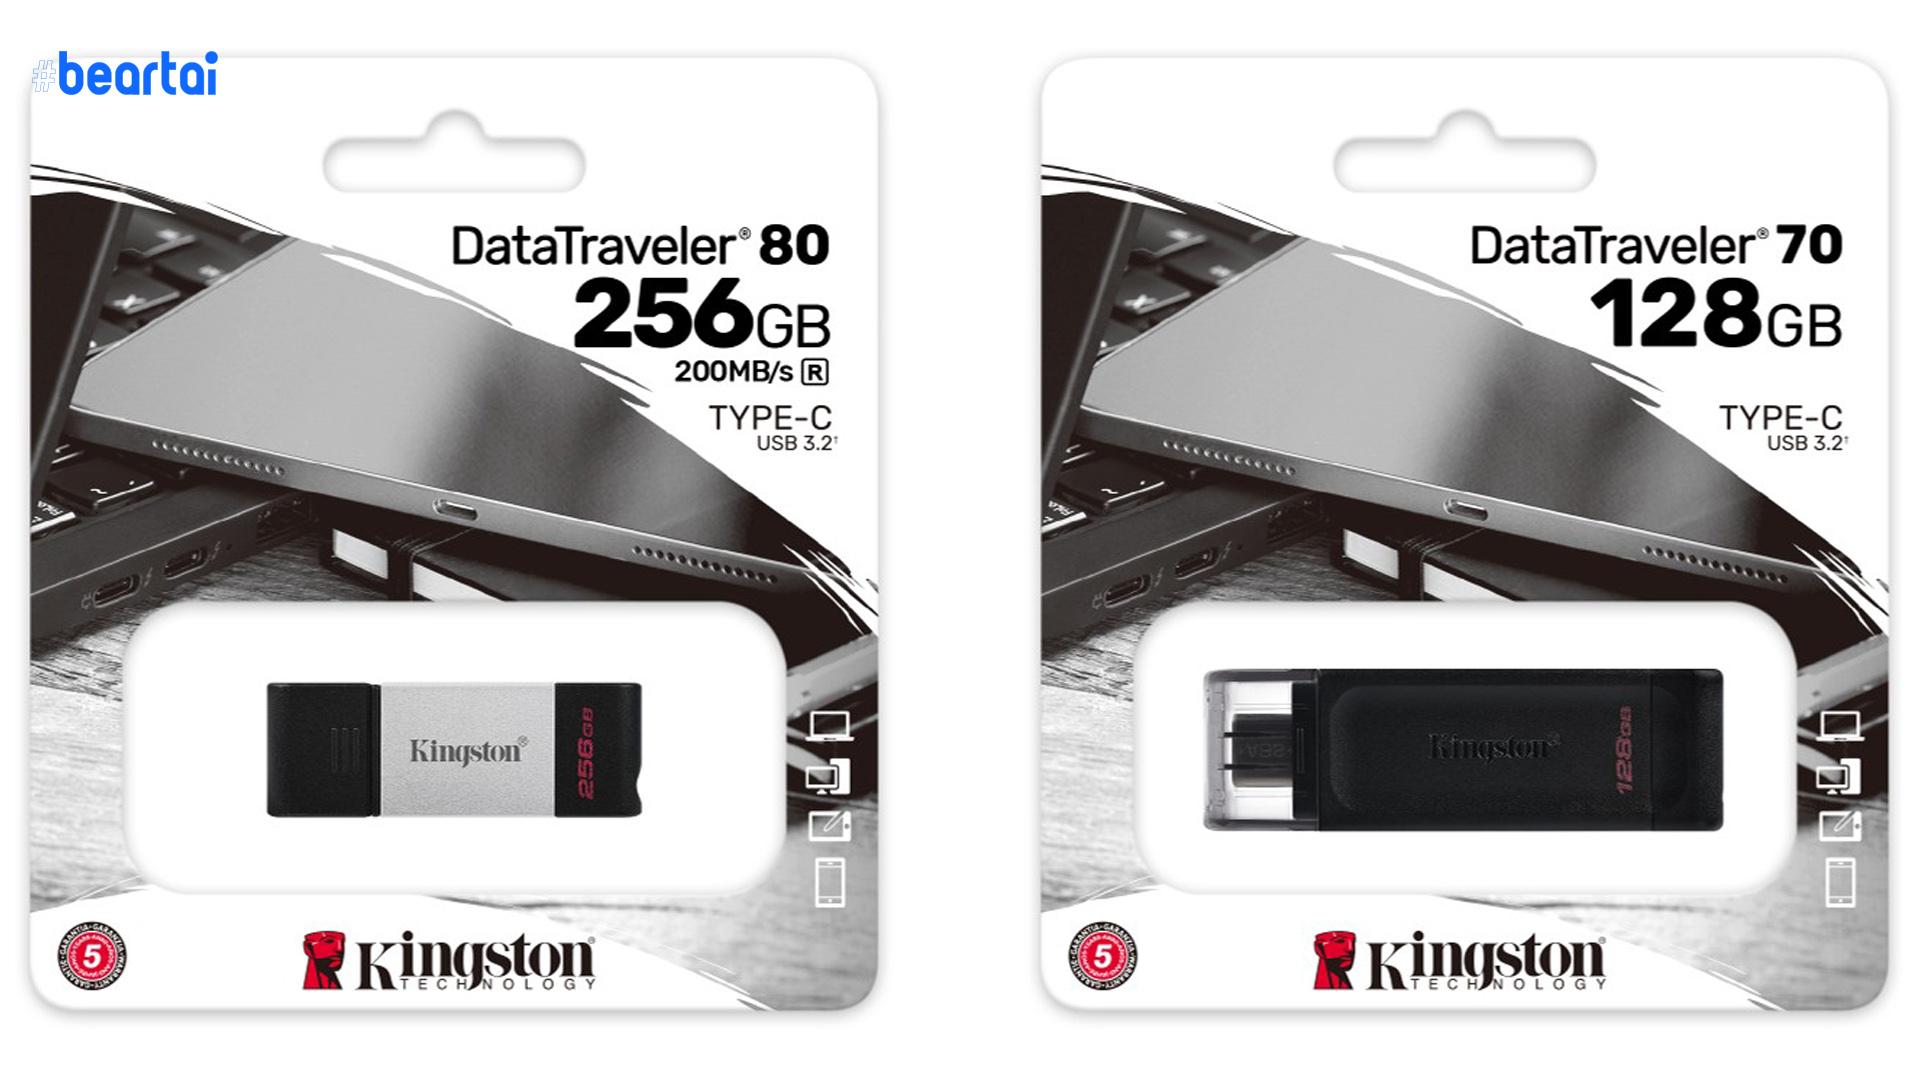 Kingston เปิดตัว DataTraveler USB Drives รุ่นใหม่ ช่วยเก็บความทรงจำที่ดีที่สุดในทุกที่ทุกเวลา